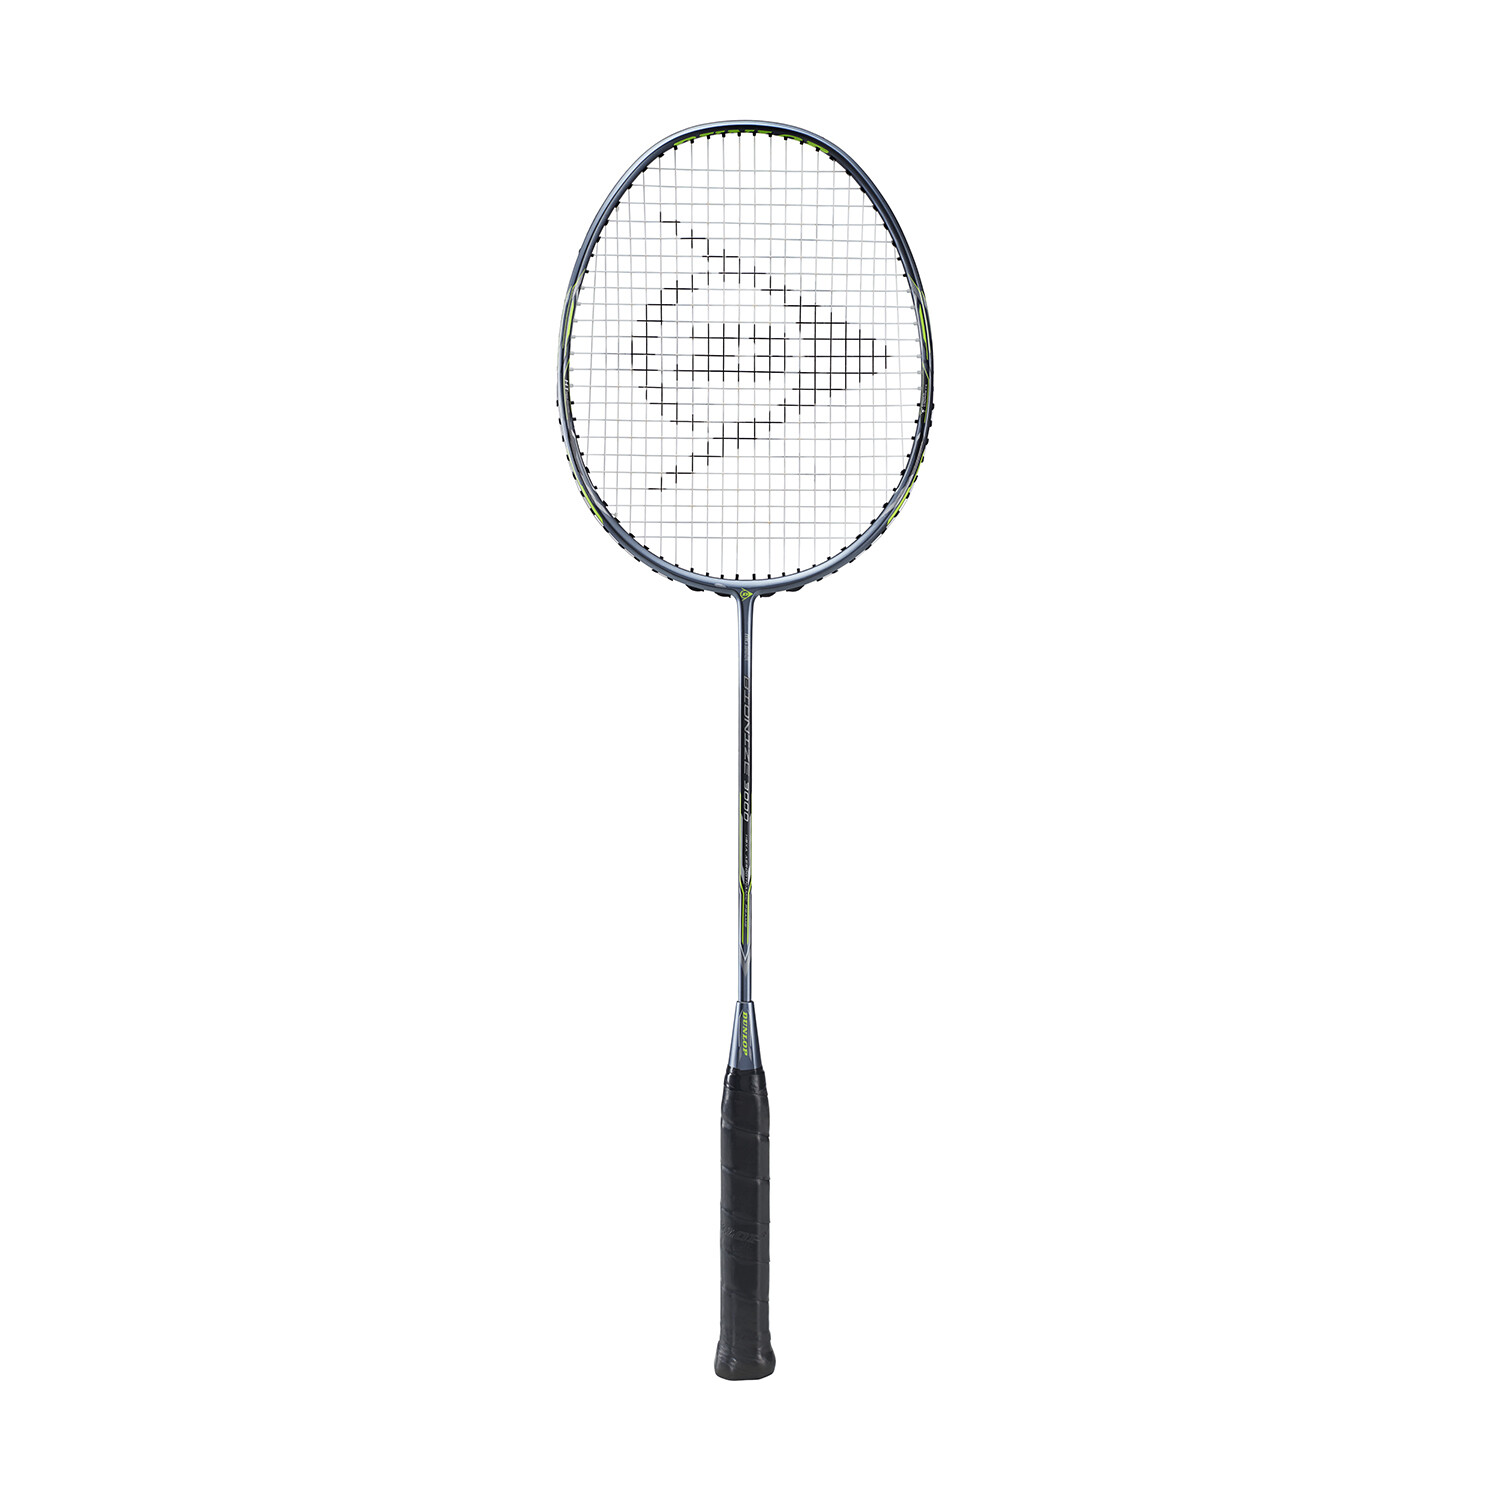 Mantle Inaccessible Enhance Dunlop Badminton Bionize 3000